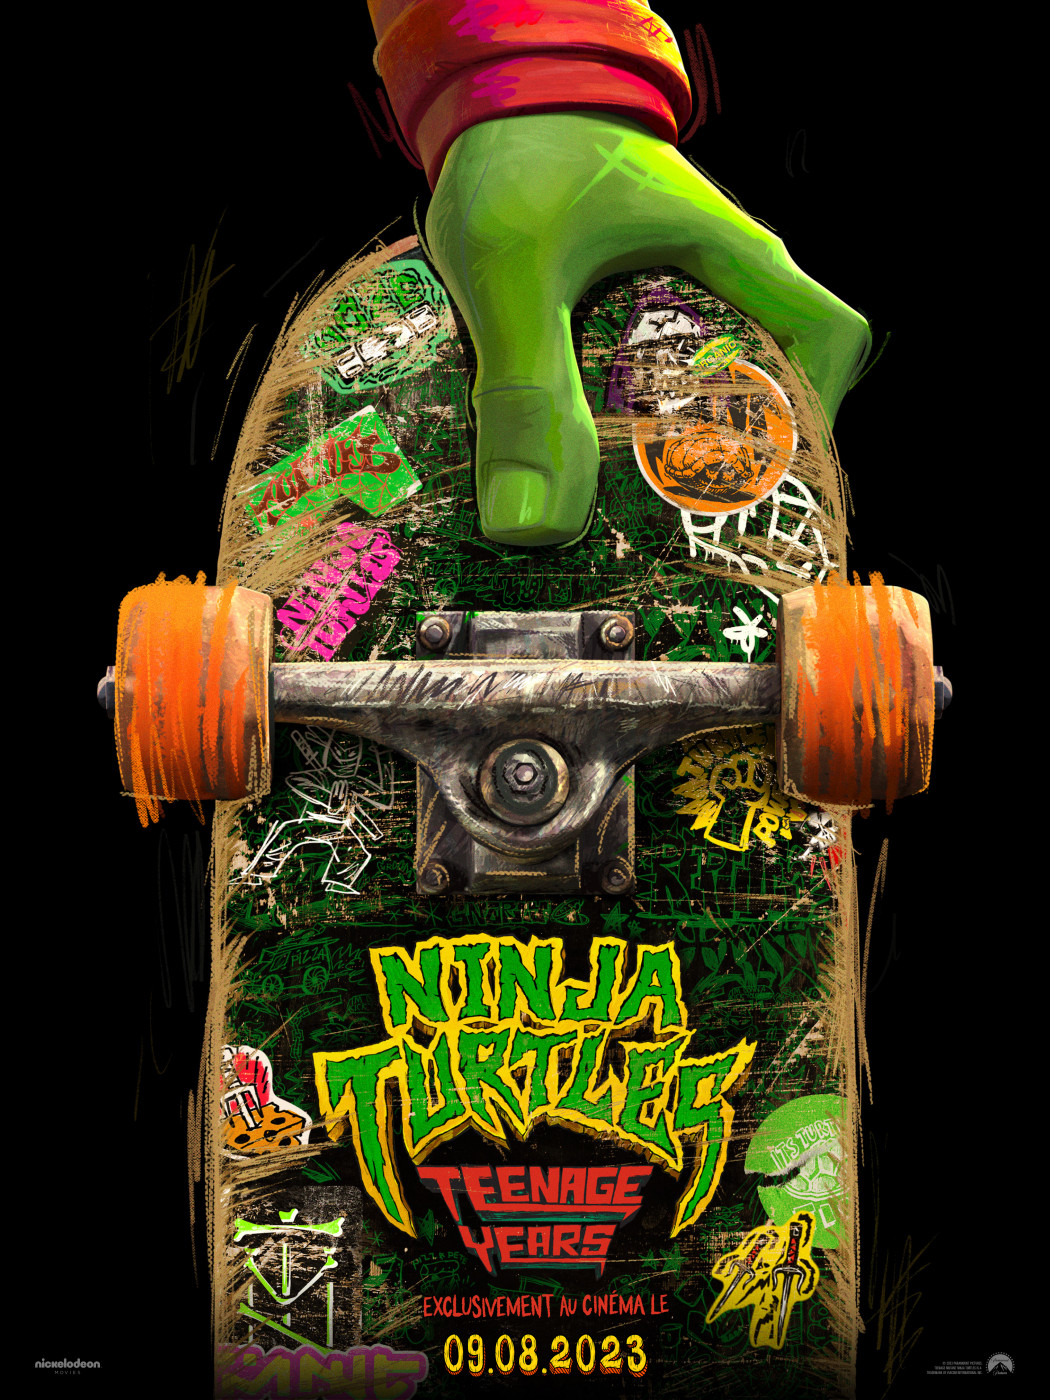 Teenage Mutant Ninja Turtles Mutant Mayhem Artwork chf 01 Teaser F LowRes